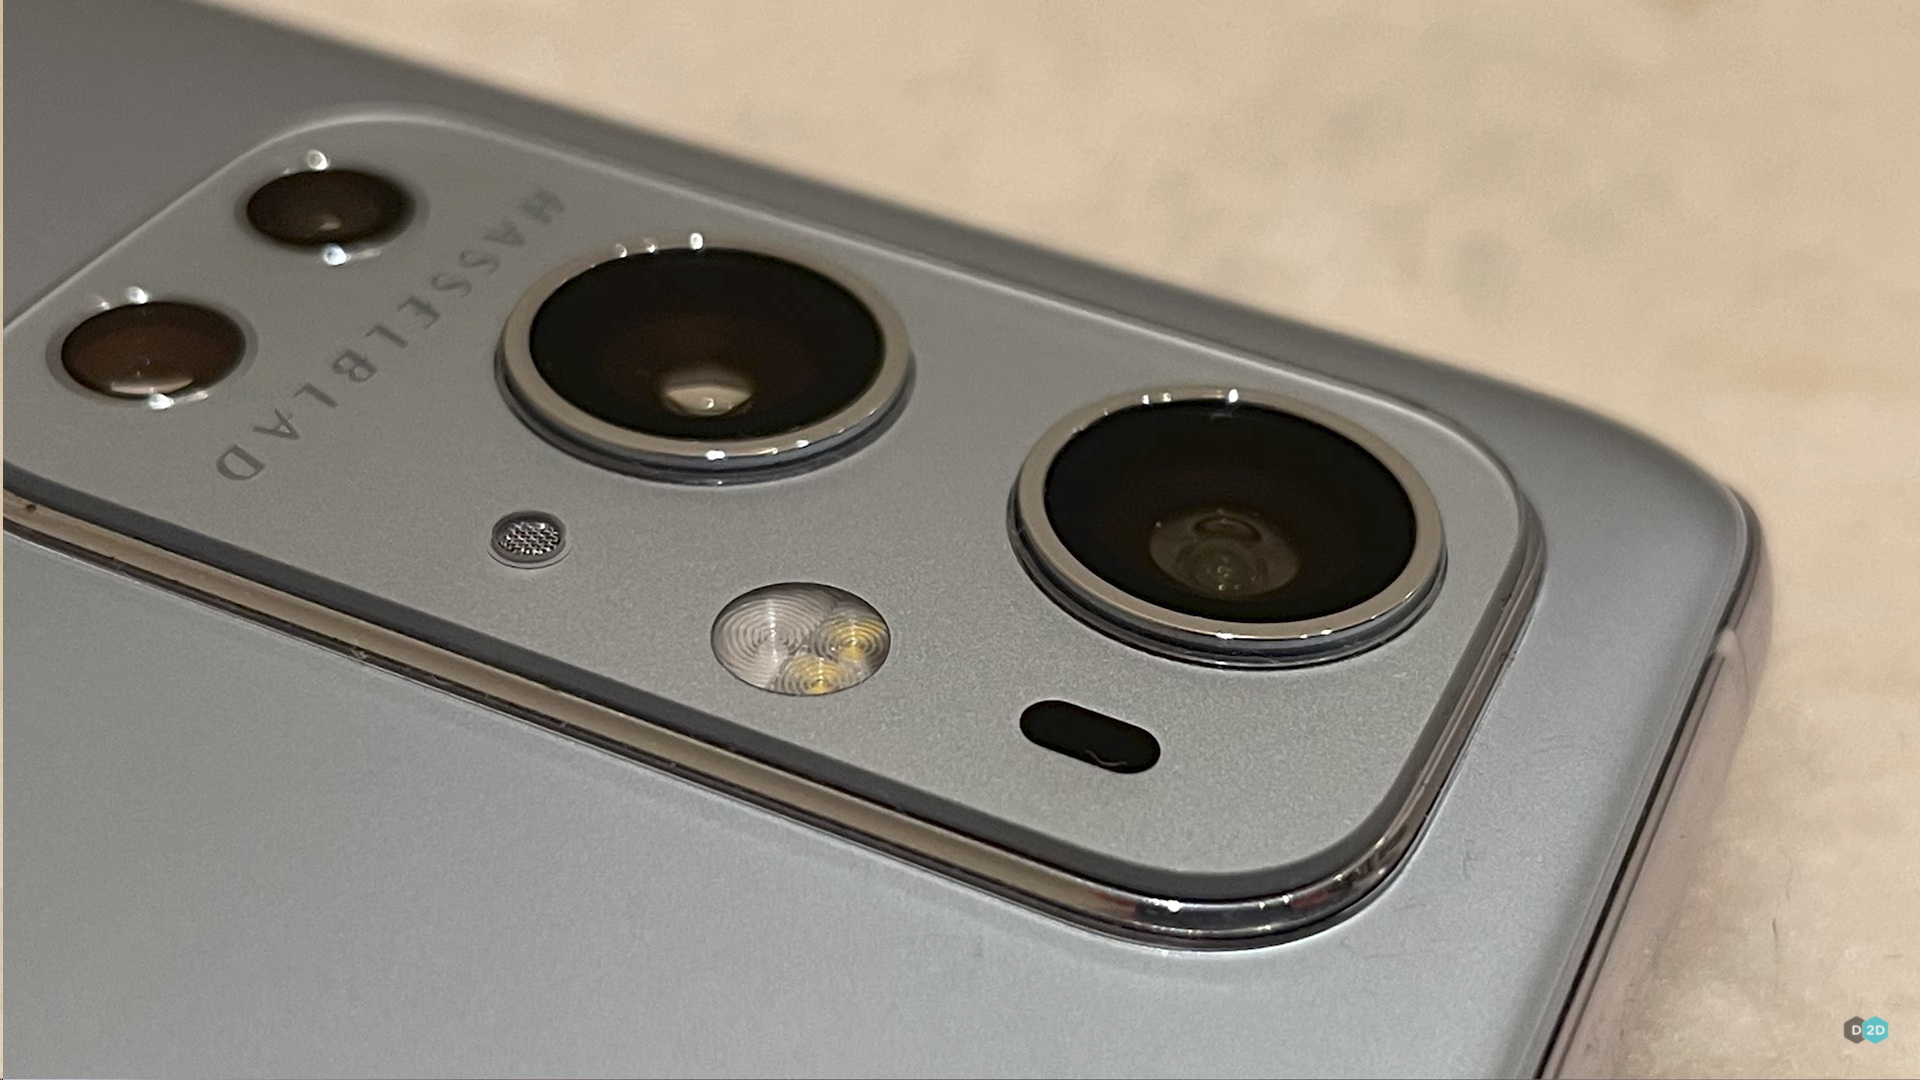  Живые фото OnePlus 9 Pro с камерой Hasselblad Другие устройства  - oneplus_9_pro_s_kameroj_hasselblad_vpervye_na_zhivyh_foto_picture2_2